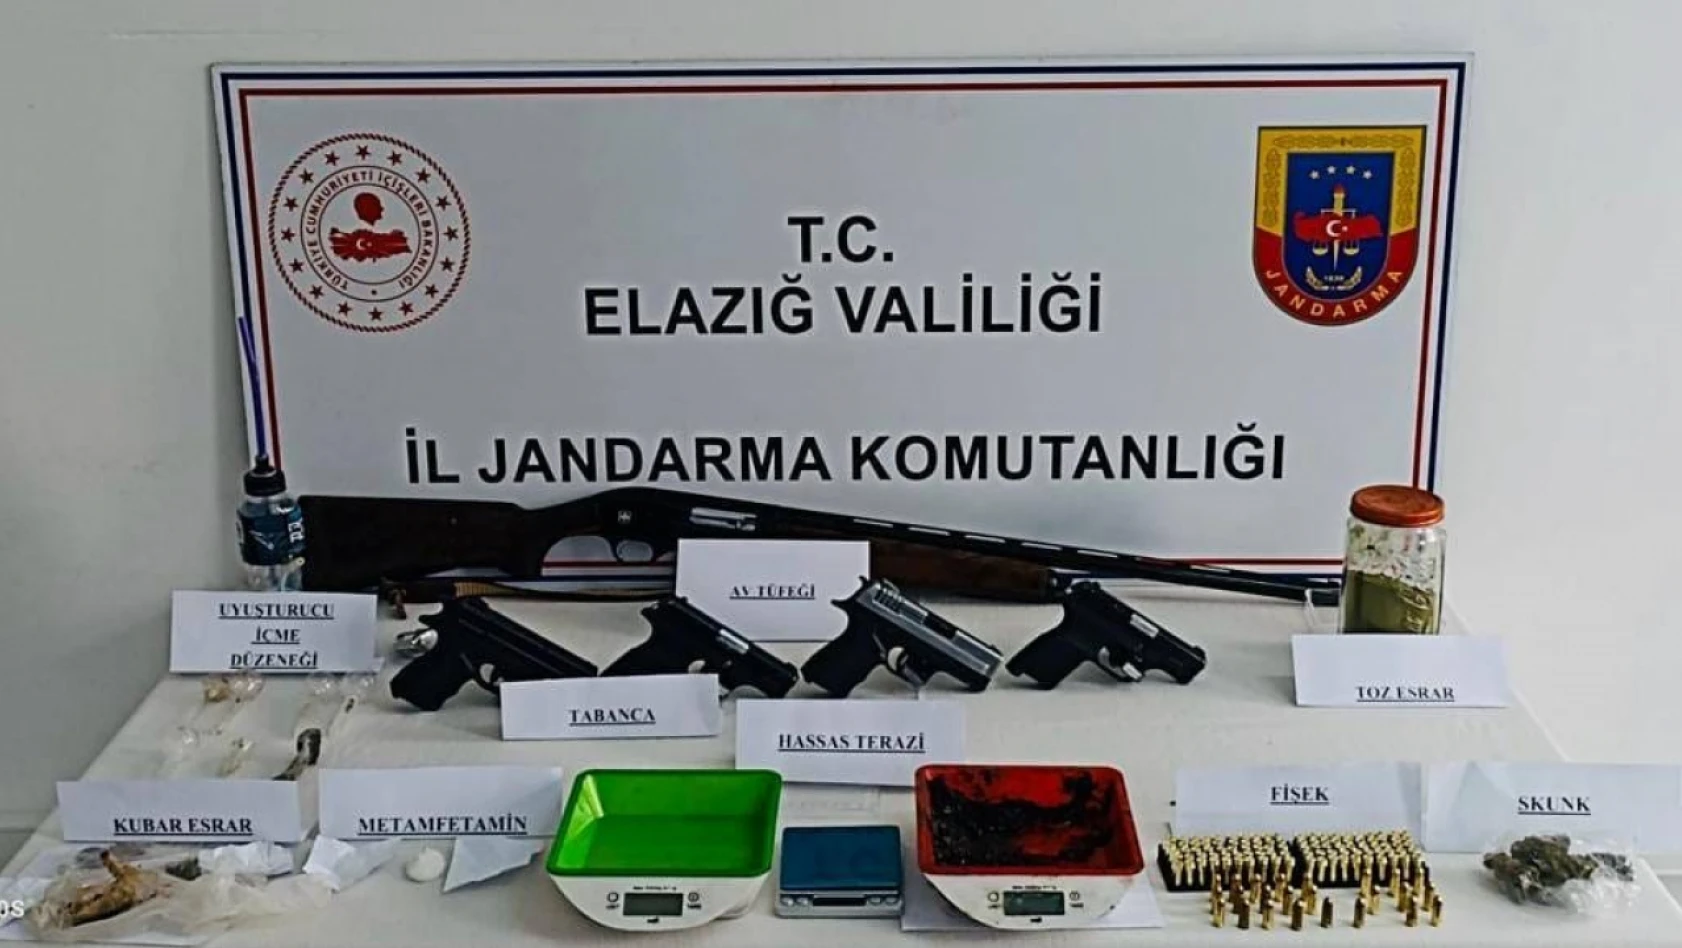 Elazığ'da uyuşturucu operasyonu: 7 şüpheli gözaltı, 21 şahsa işlem yapıldı